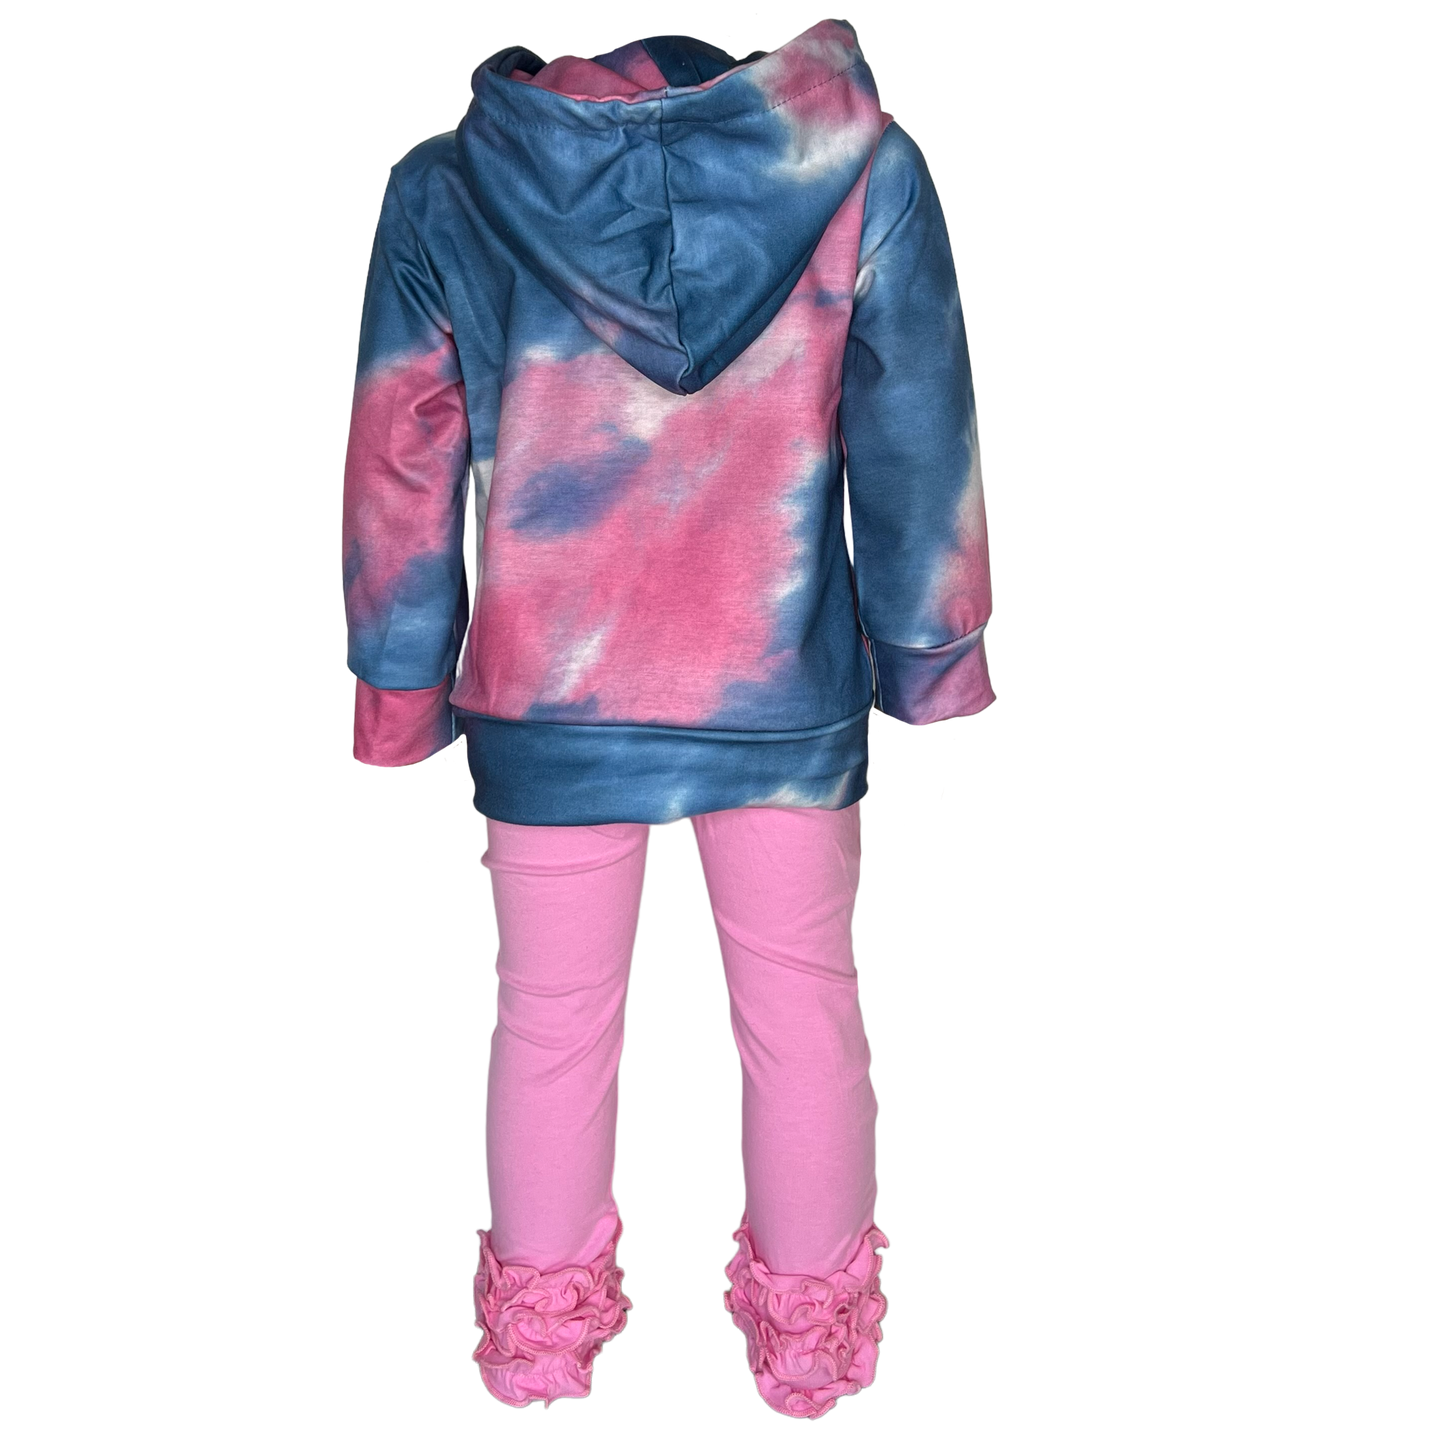 Girls Blue & Pink Pull over Tie Dye Hoodie Sweatshirt Jacket